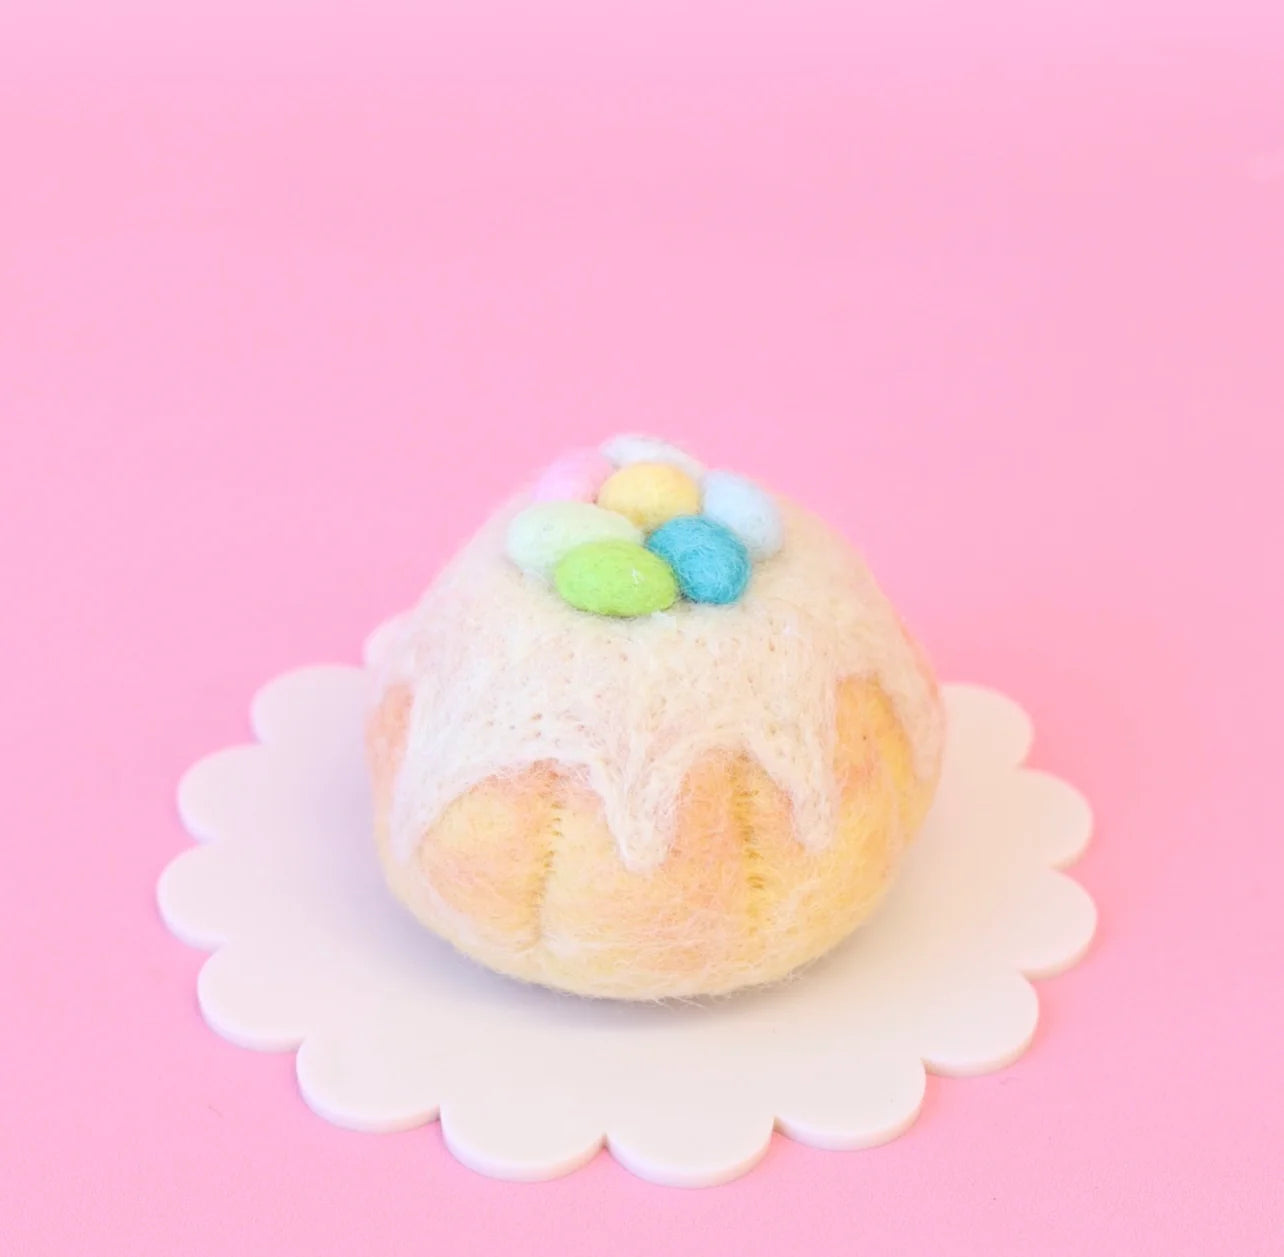 Easter Egg sponge cake Lemon-Fun-Little Fish Co.